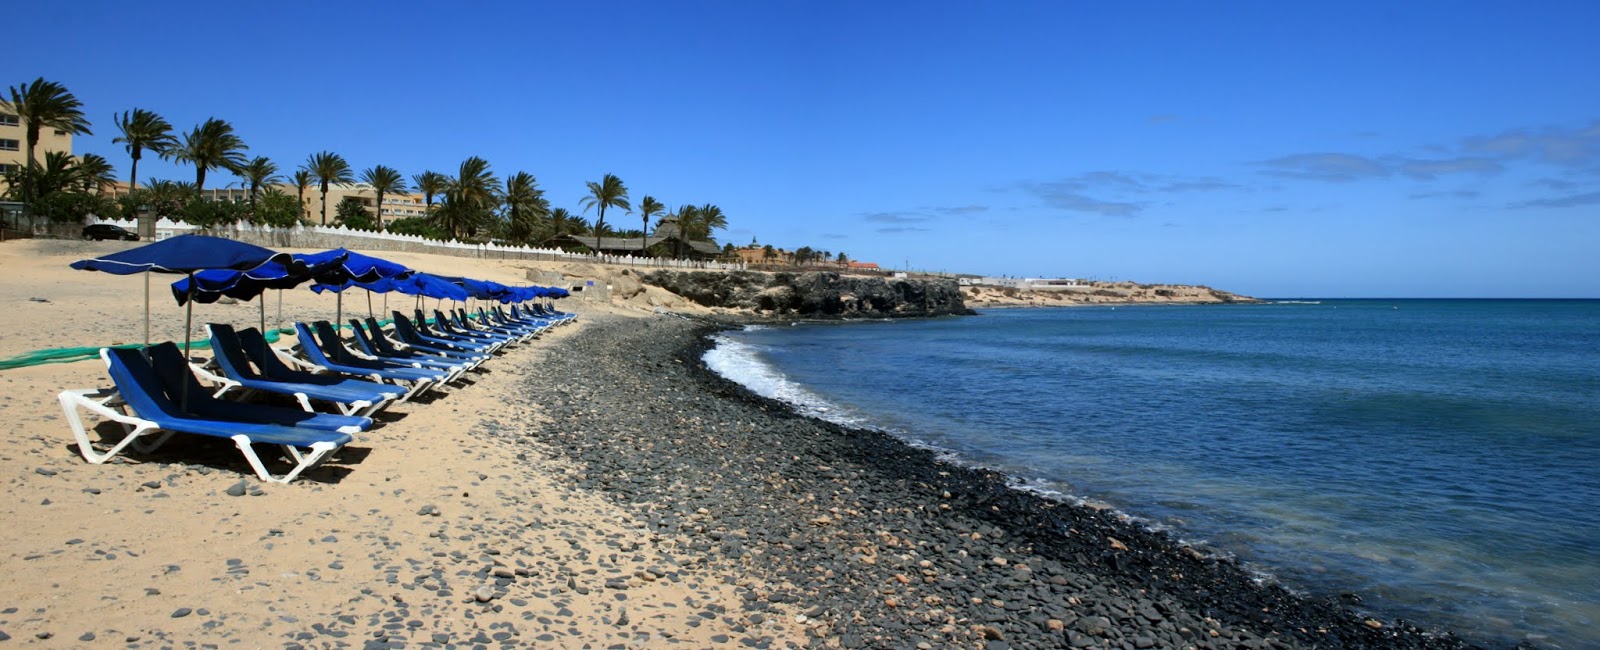 Photo de Playa de los Molinos avec petite baie